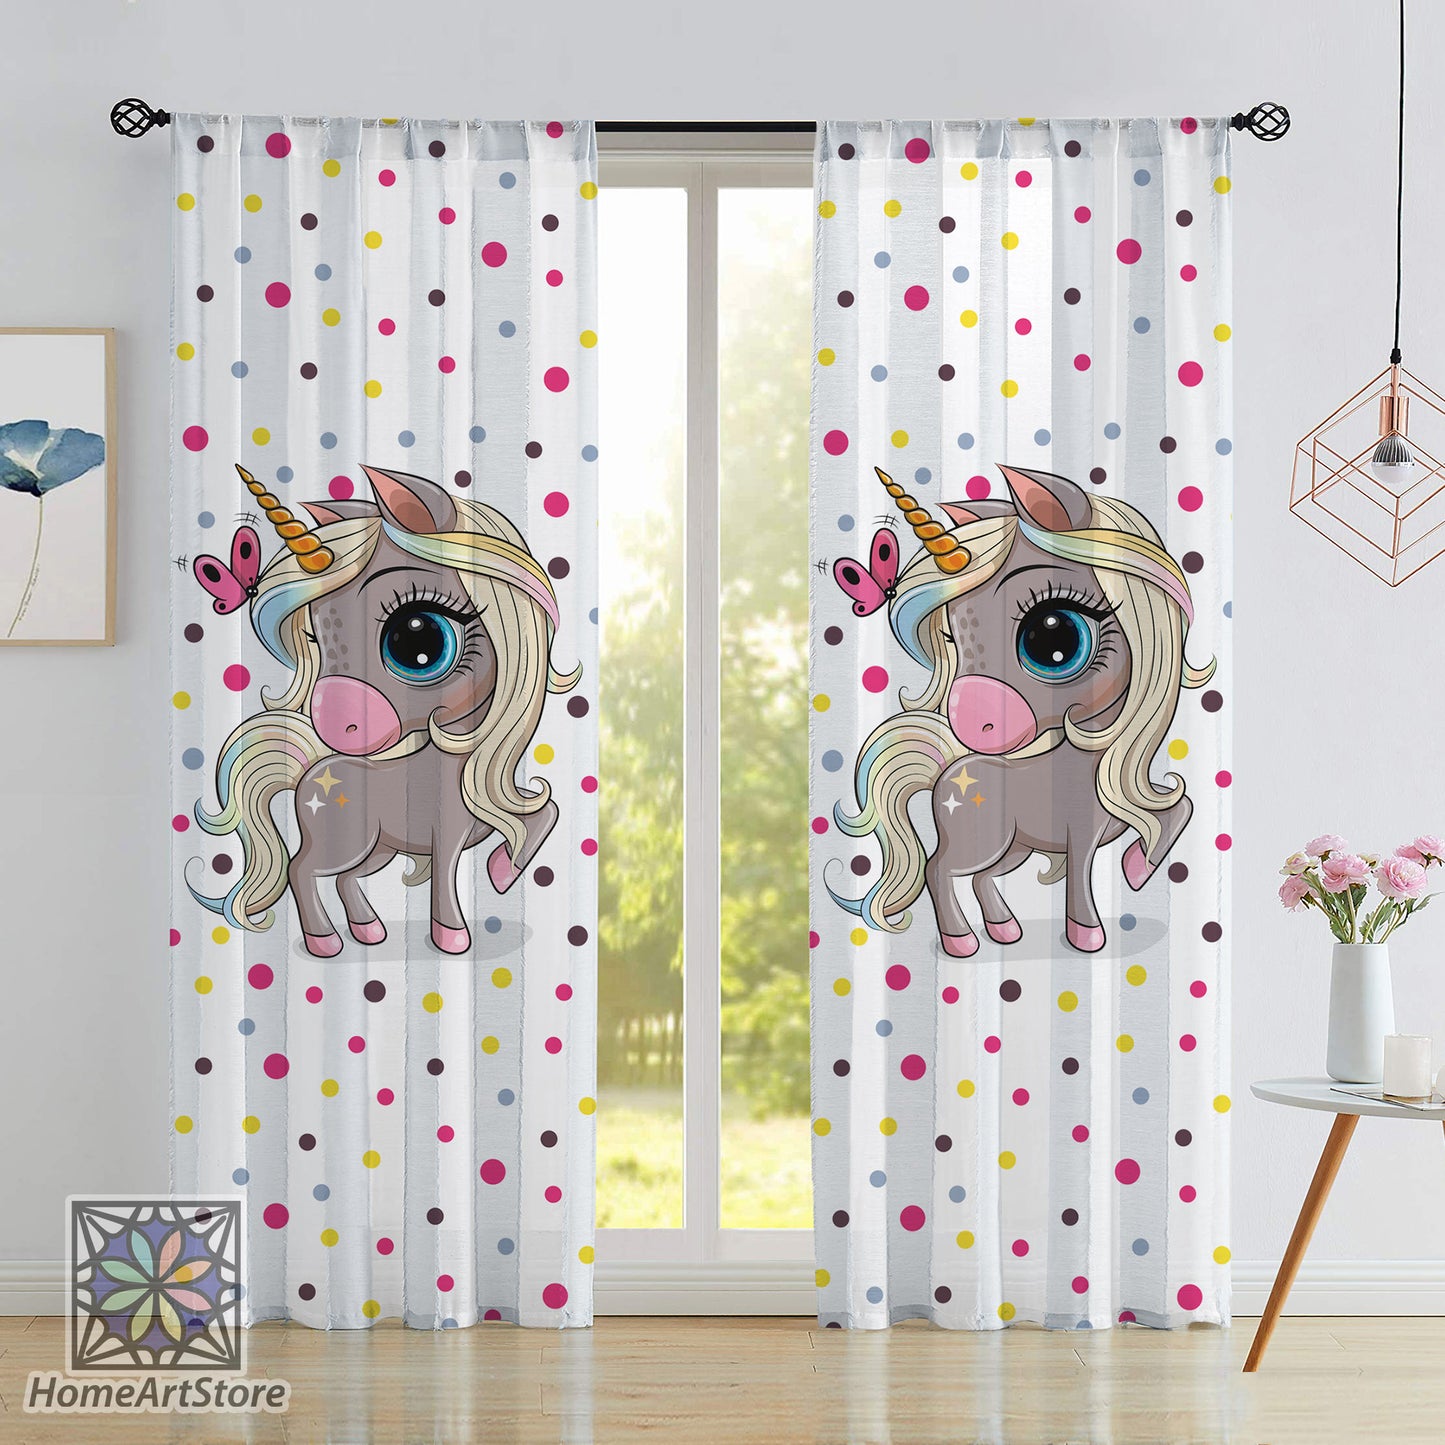 Rainbow Unicorn Themed Curtain, Girl Room Curtain, Colorful Baby Room Curtain, Nursery Decor, Baby Girl Gift